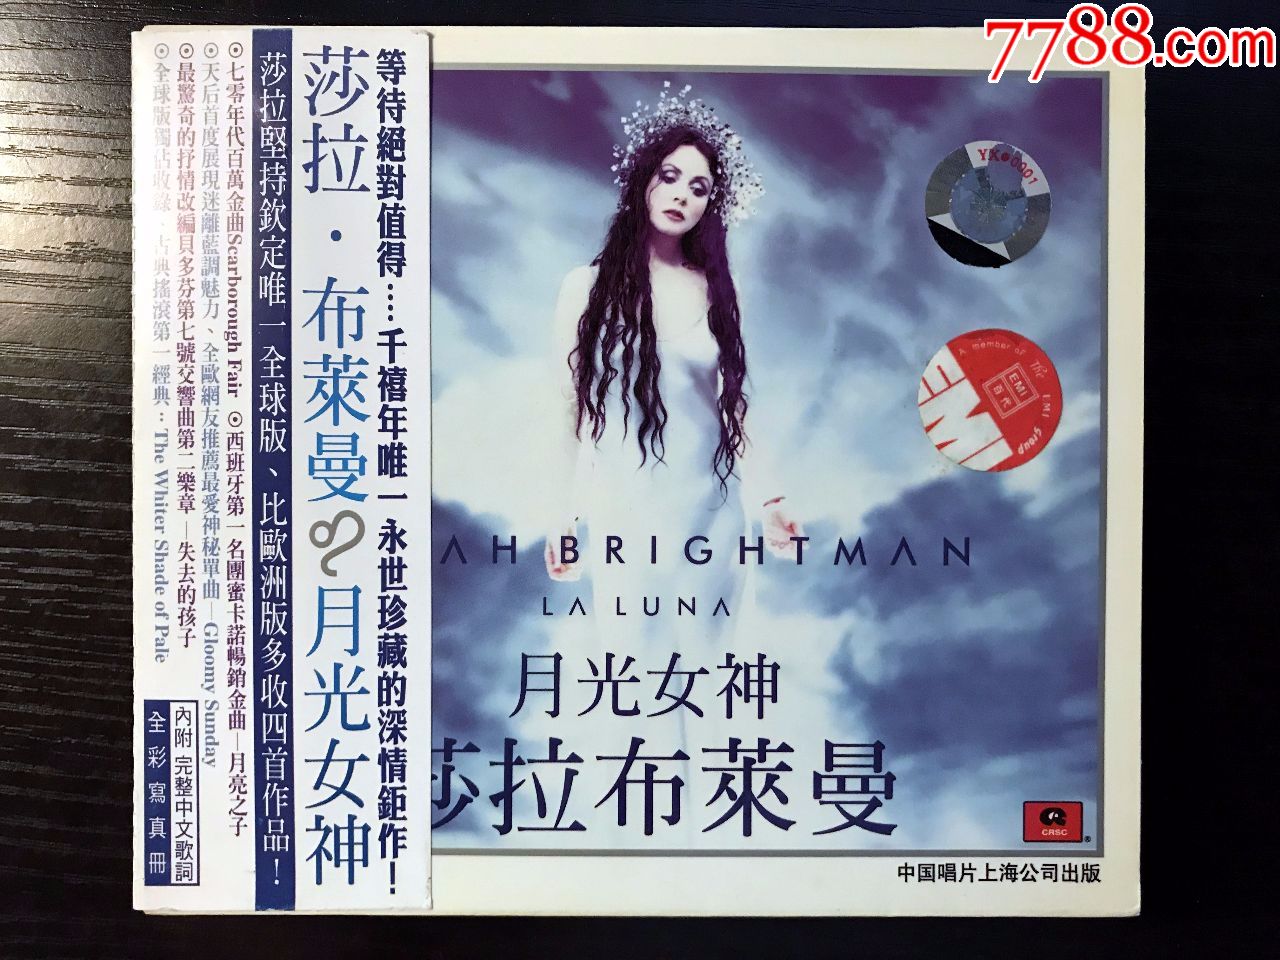 莎拉布莱曼:月光女神,中唱上海公司出版,精装版